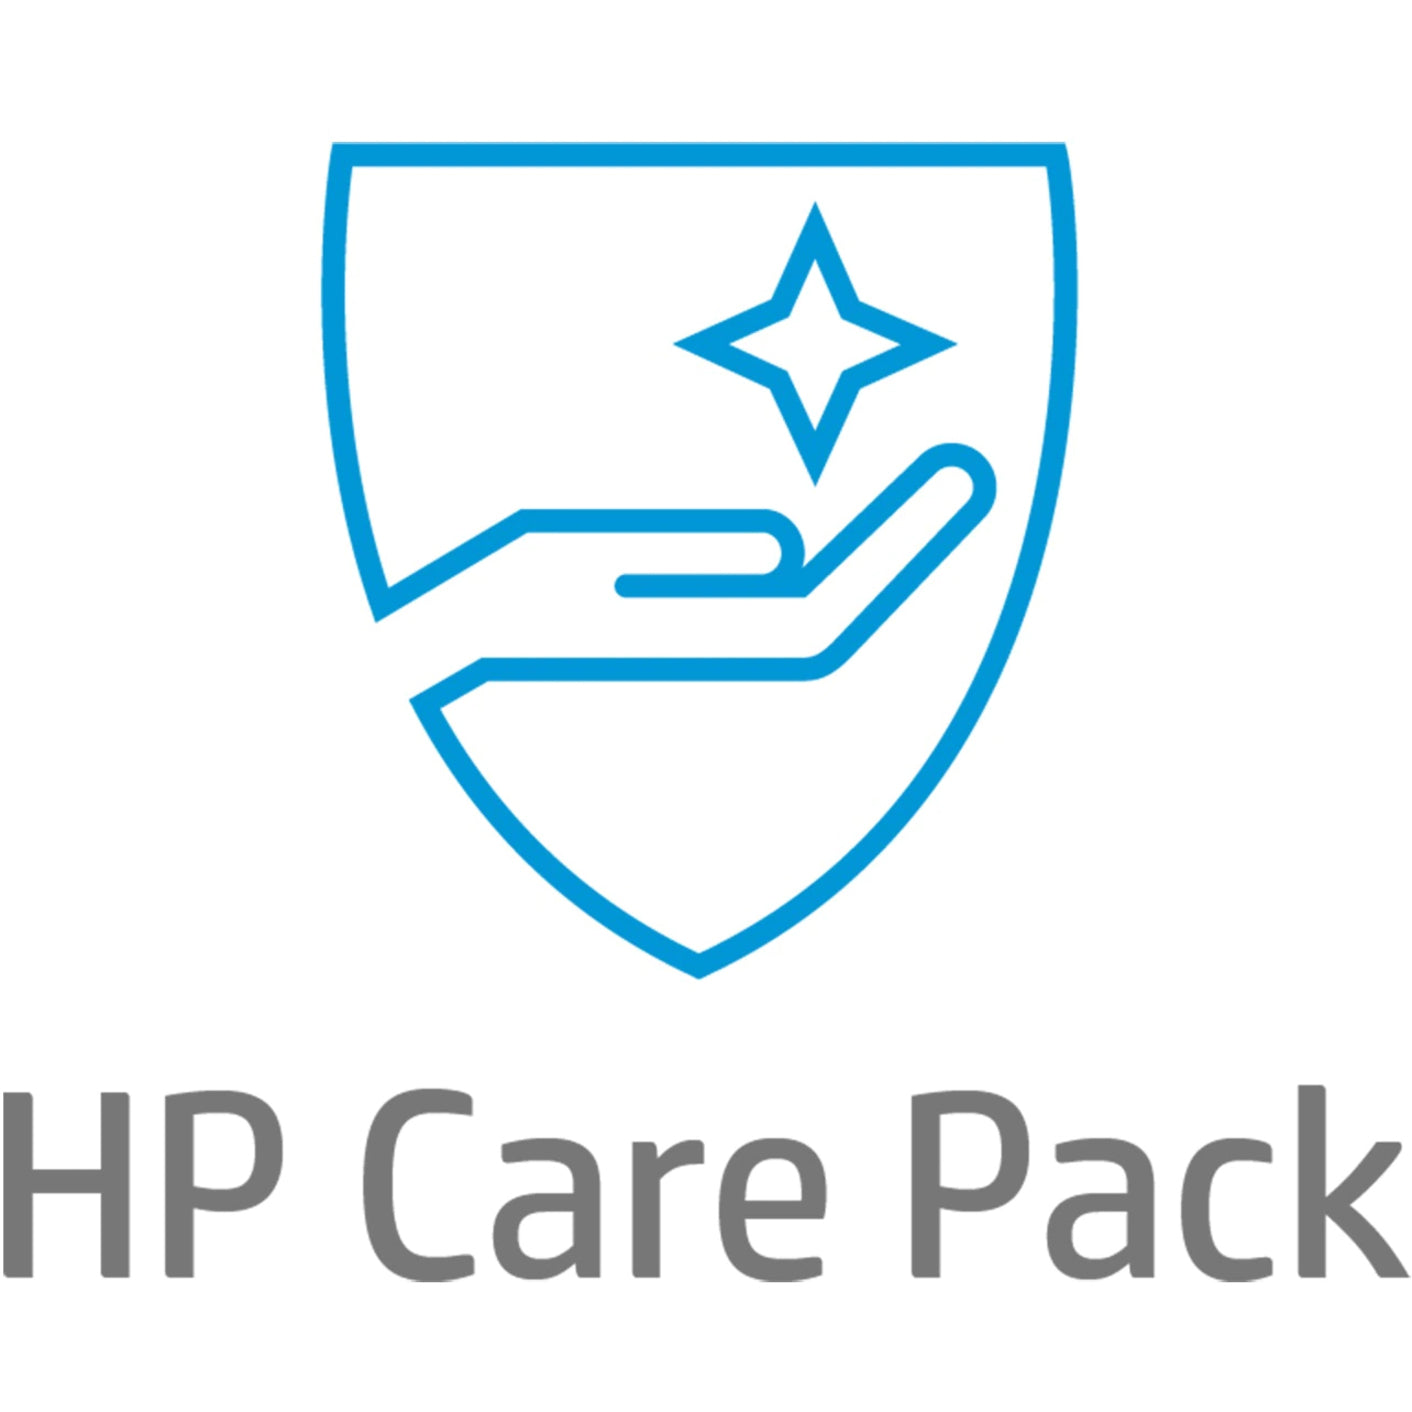 HP Care Pack - 4 Year - Service (U7927E)